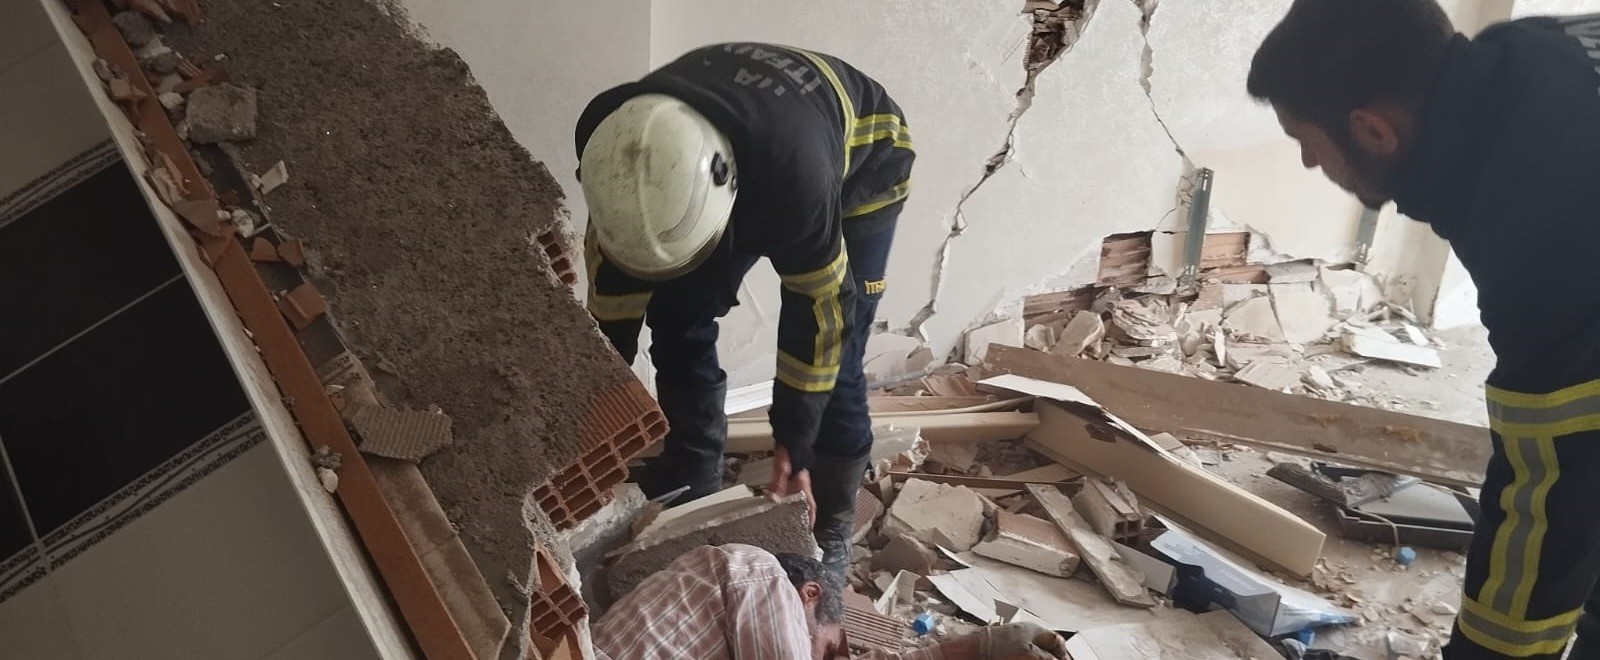 Hatay'ın Kırıkhan ilçesinin Yenimahalle bölgesinde, ağır hasar görmüş Erol Apartmanı'na girmeye cesaret eden yabancı uyruklu bir şahıs, binanın çökmesi sonucu ağır yaralandı.